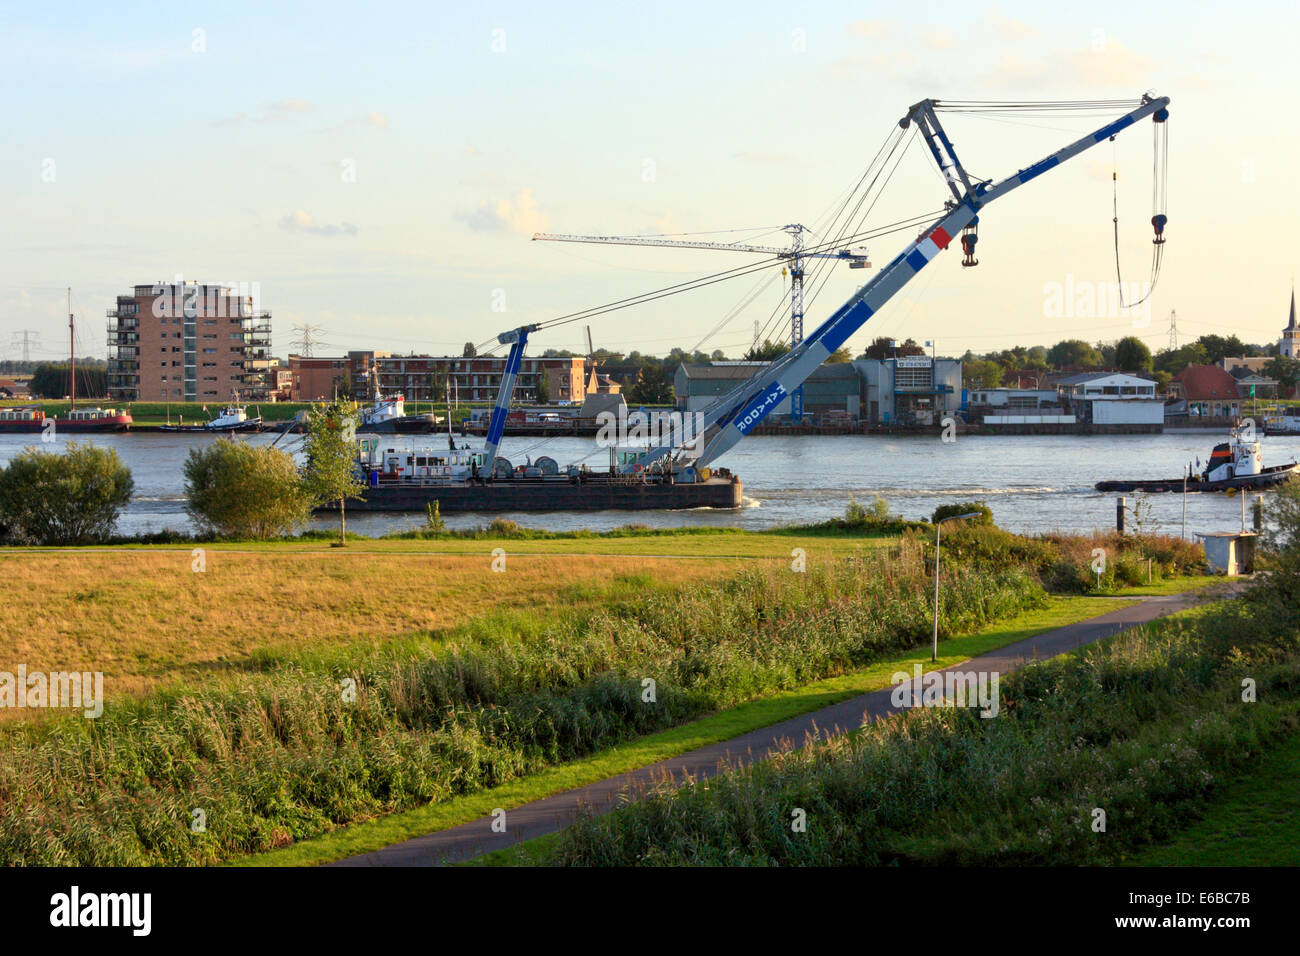 Crane Barge 'Matador' under tow on Oude Maas River Stock Photo